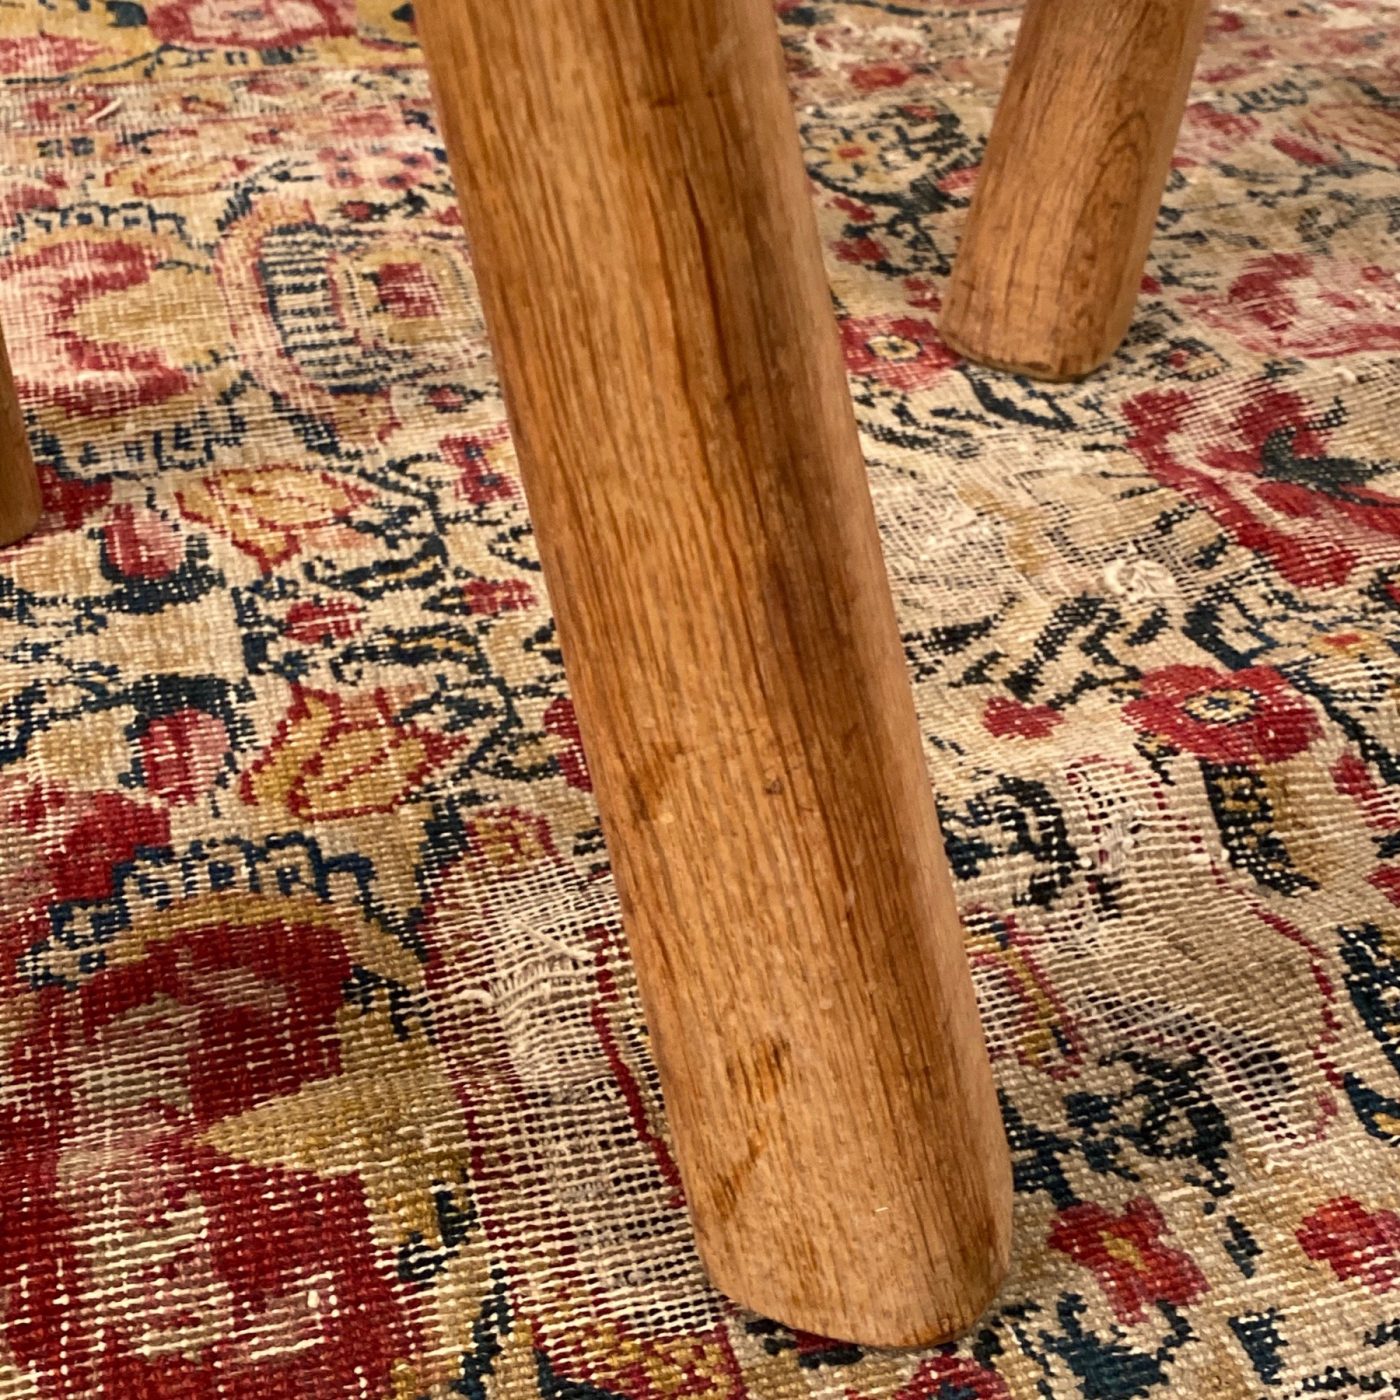 objet-vagabond-oak-stools0004